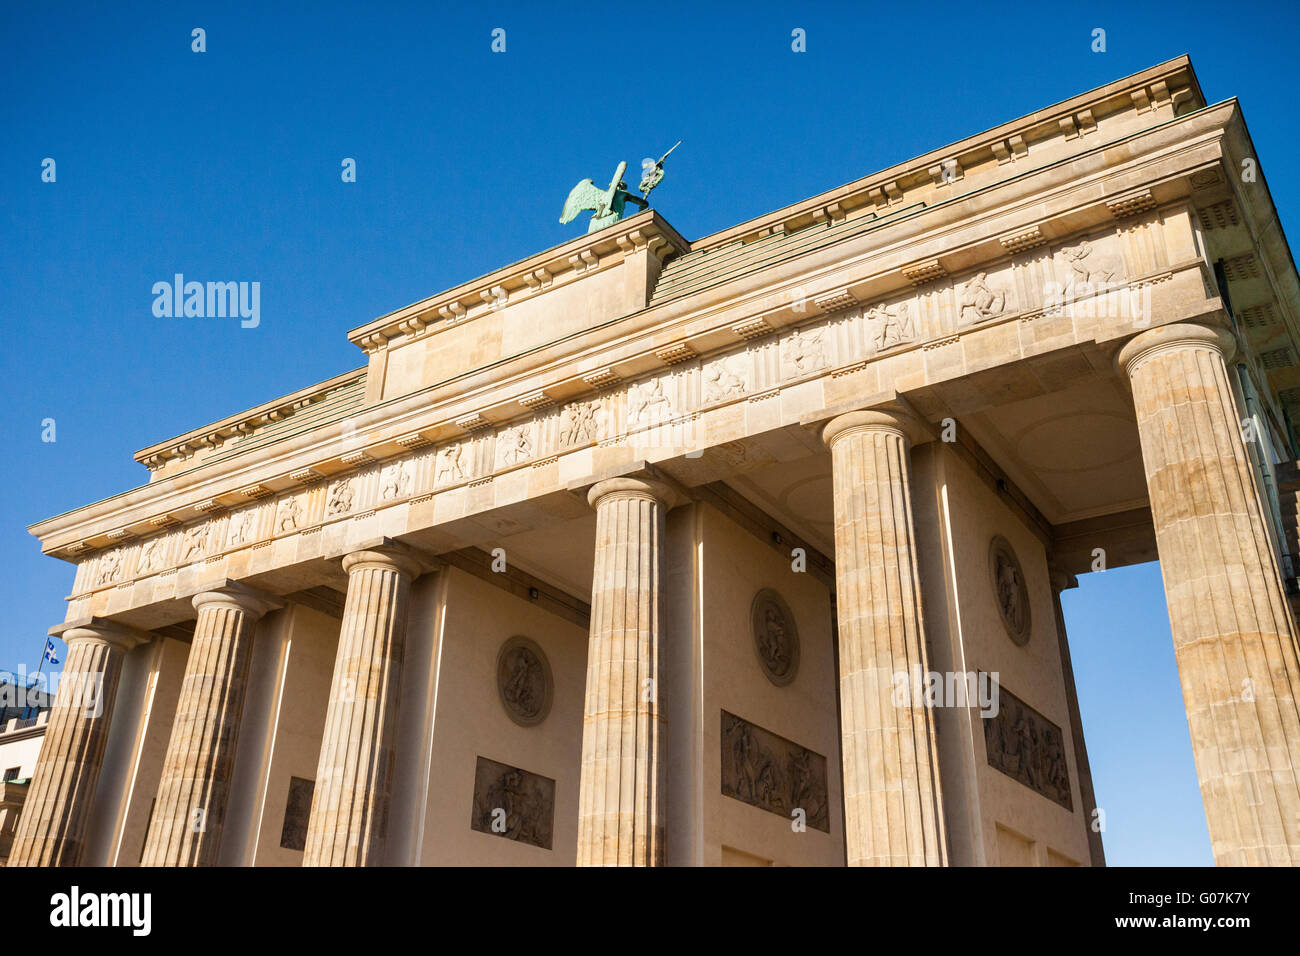 Porte de Brandebourg (Brandenburger Tor) à Berlin, Allemagne Banque D'Images